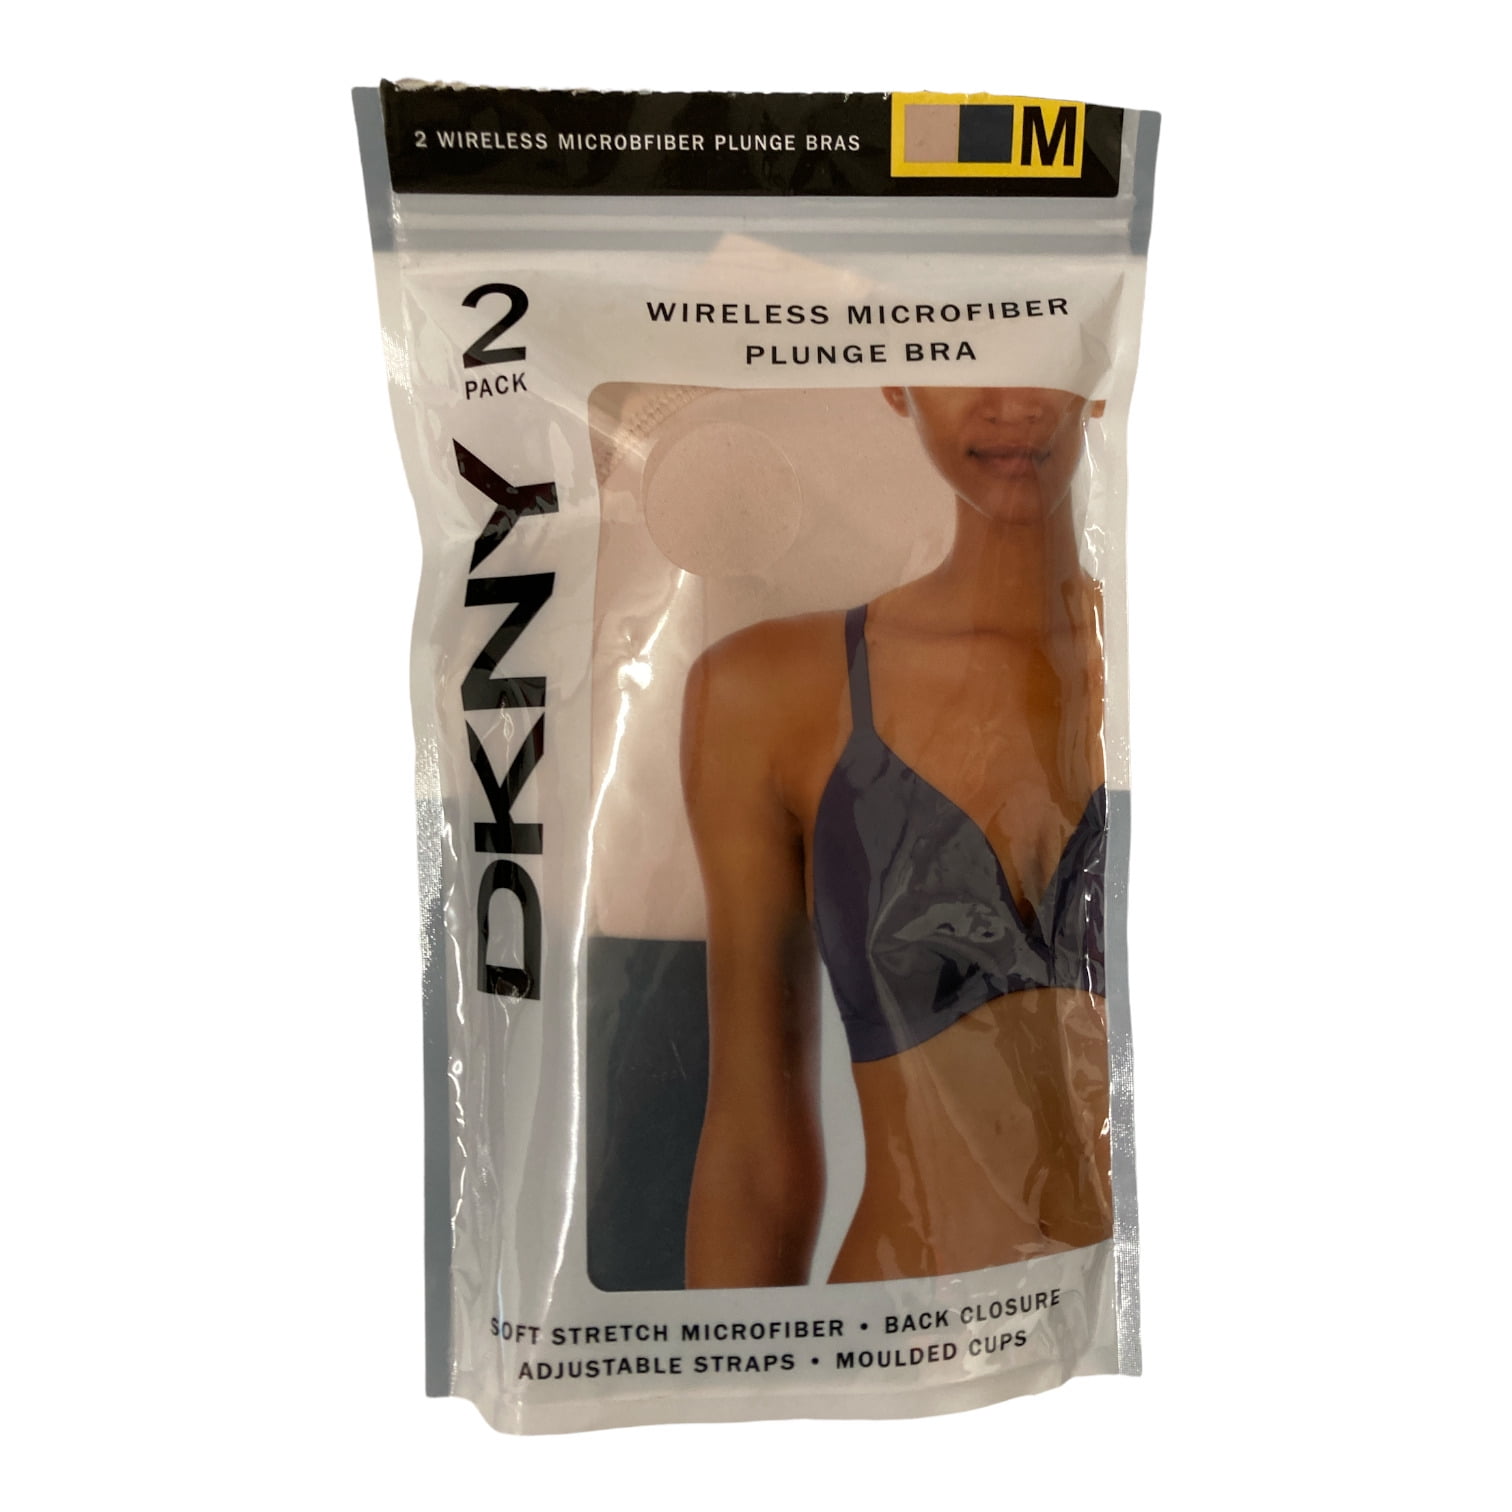 DKNY Ladies 2 Pack Wireless Microfiber Plunge Bra In Ink/Sand S